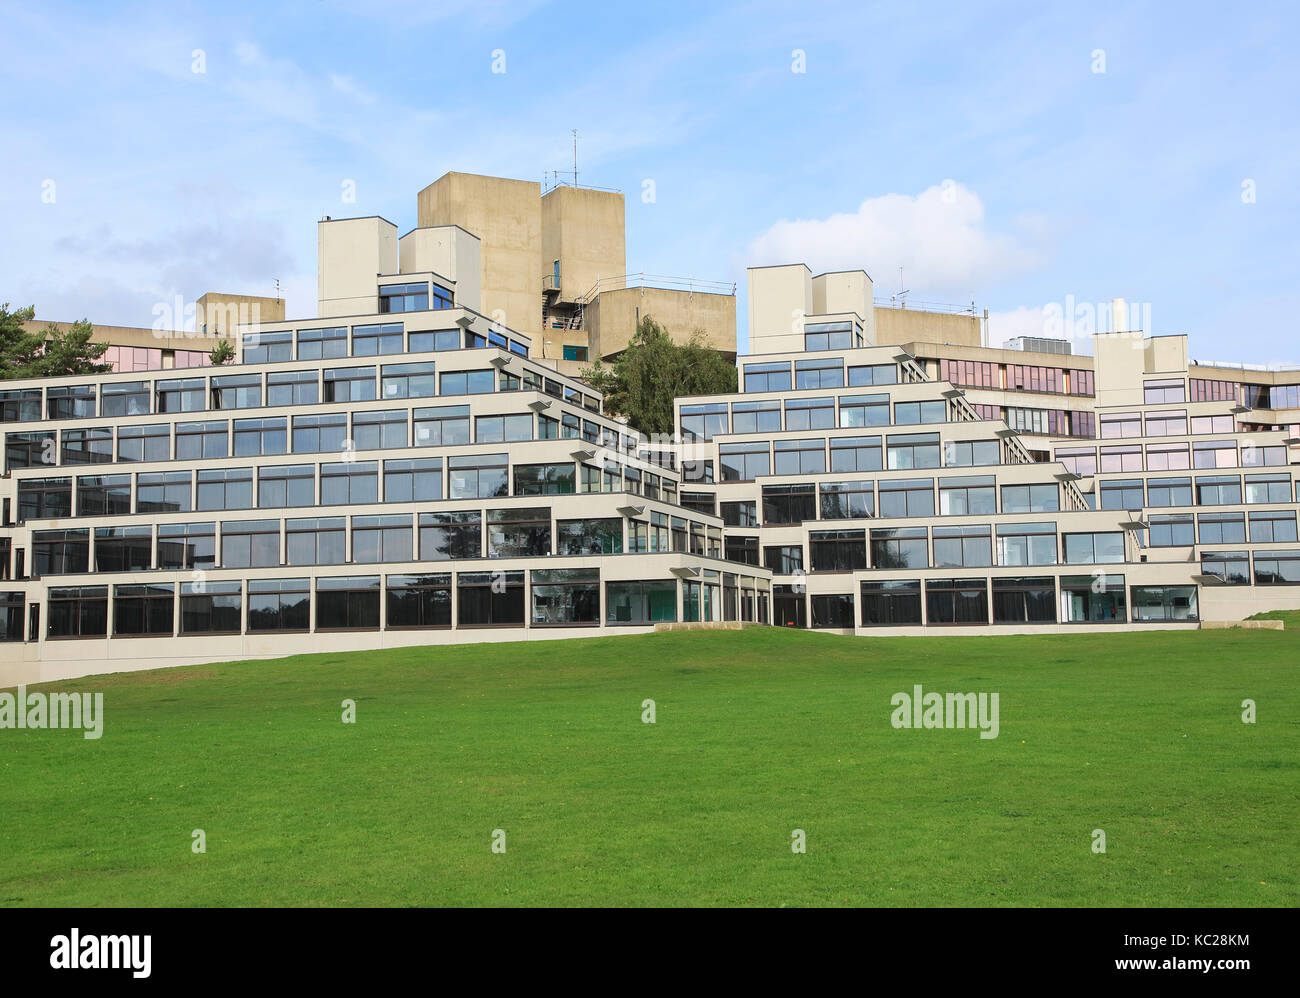 Logement des étudiants des bâtiments connus comme Ziggurats, campus de l'Université d'East Anglia, Norwich, Norfolk, England, UK Banque D'Images